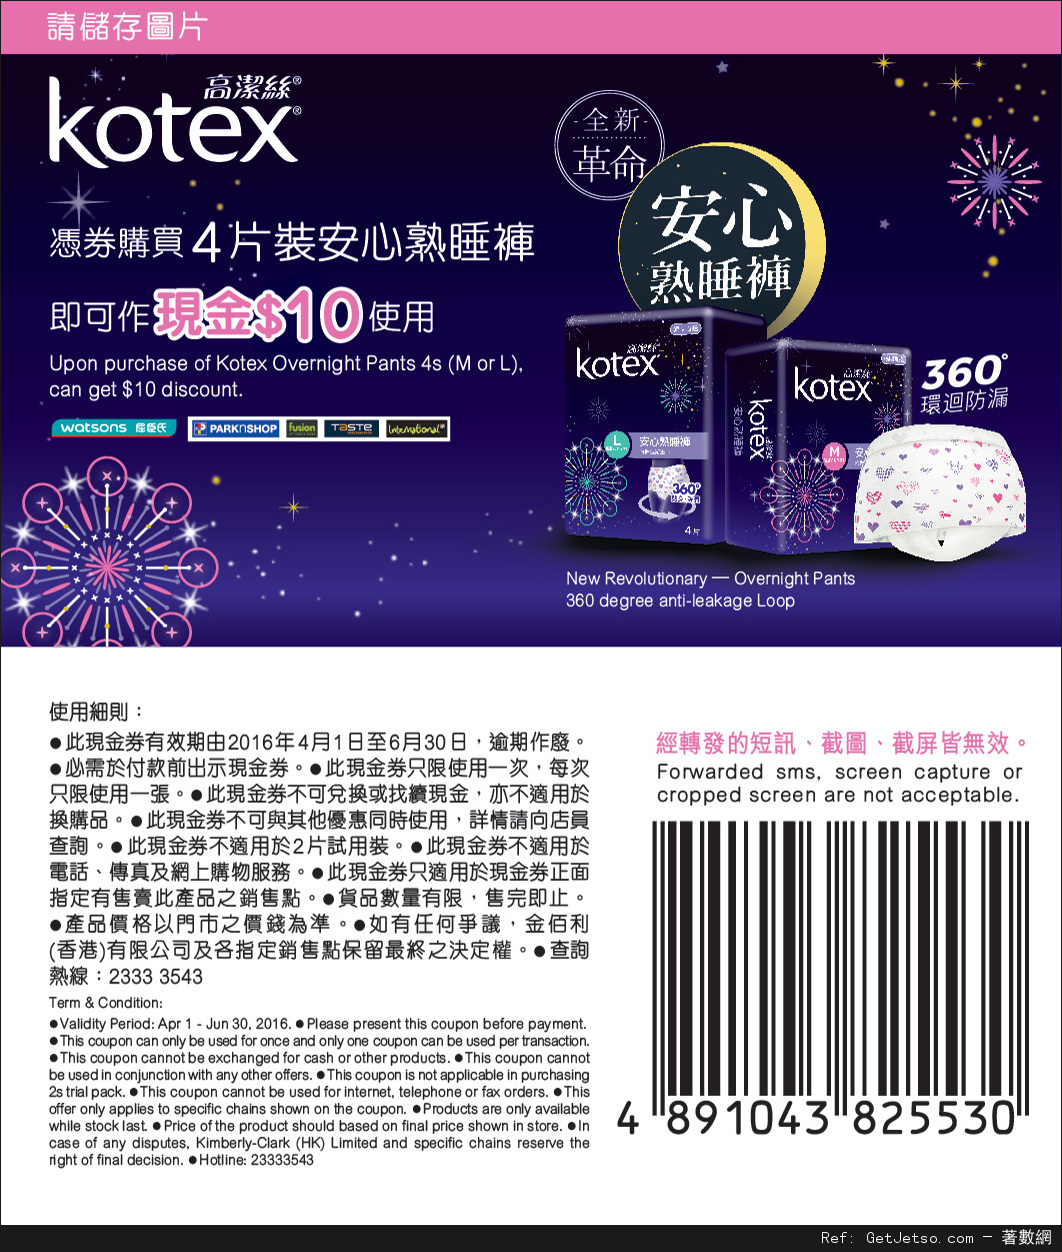 Kotex 安心熟睡褲免費試用裝優惠(至16年5月4日)圖片2